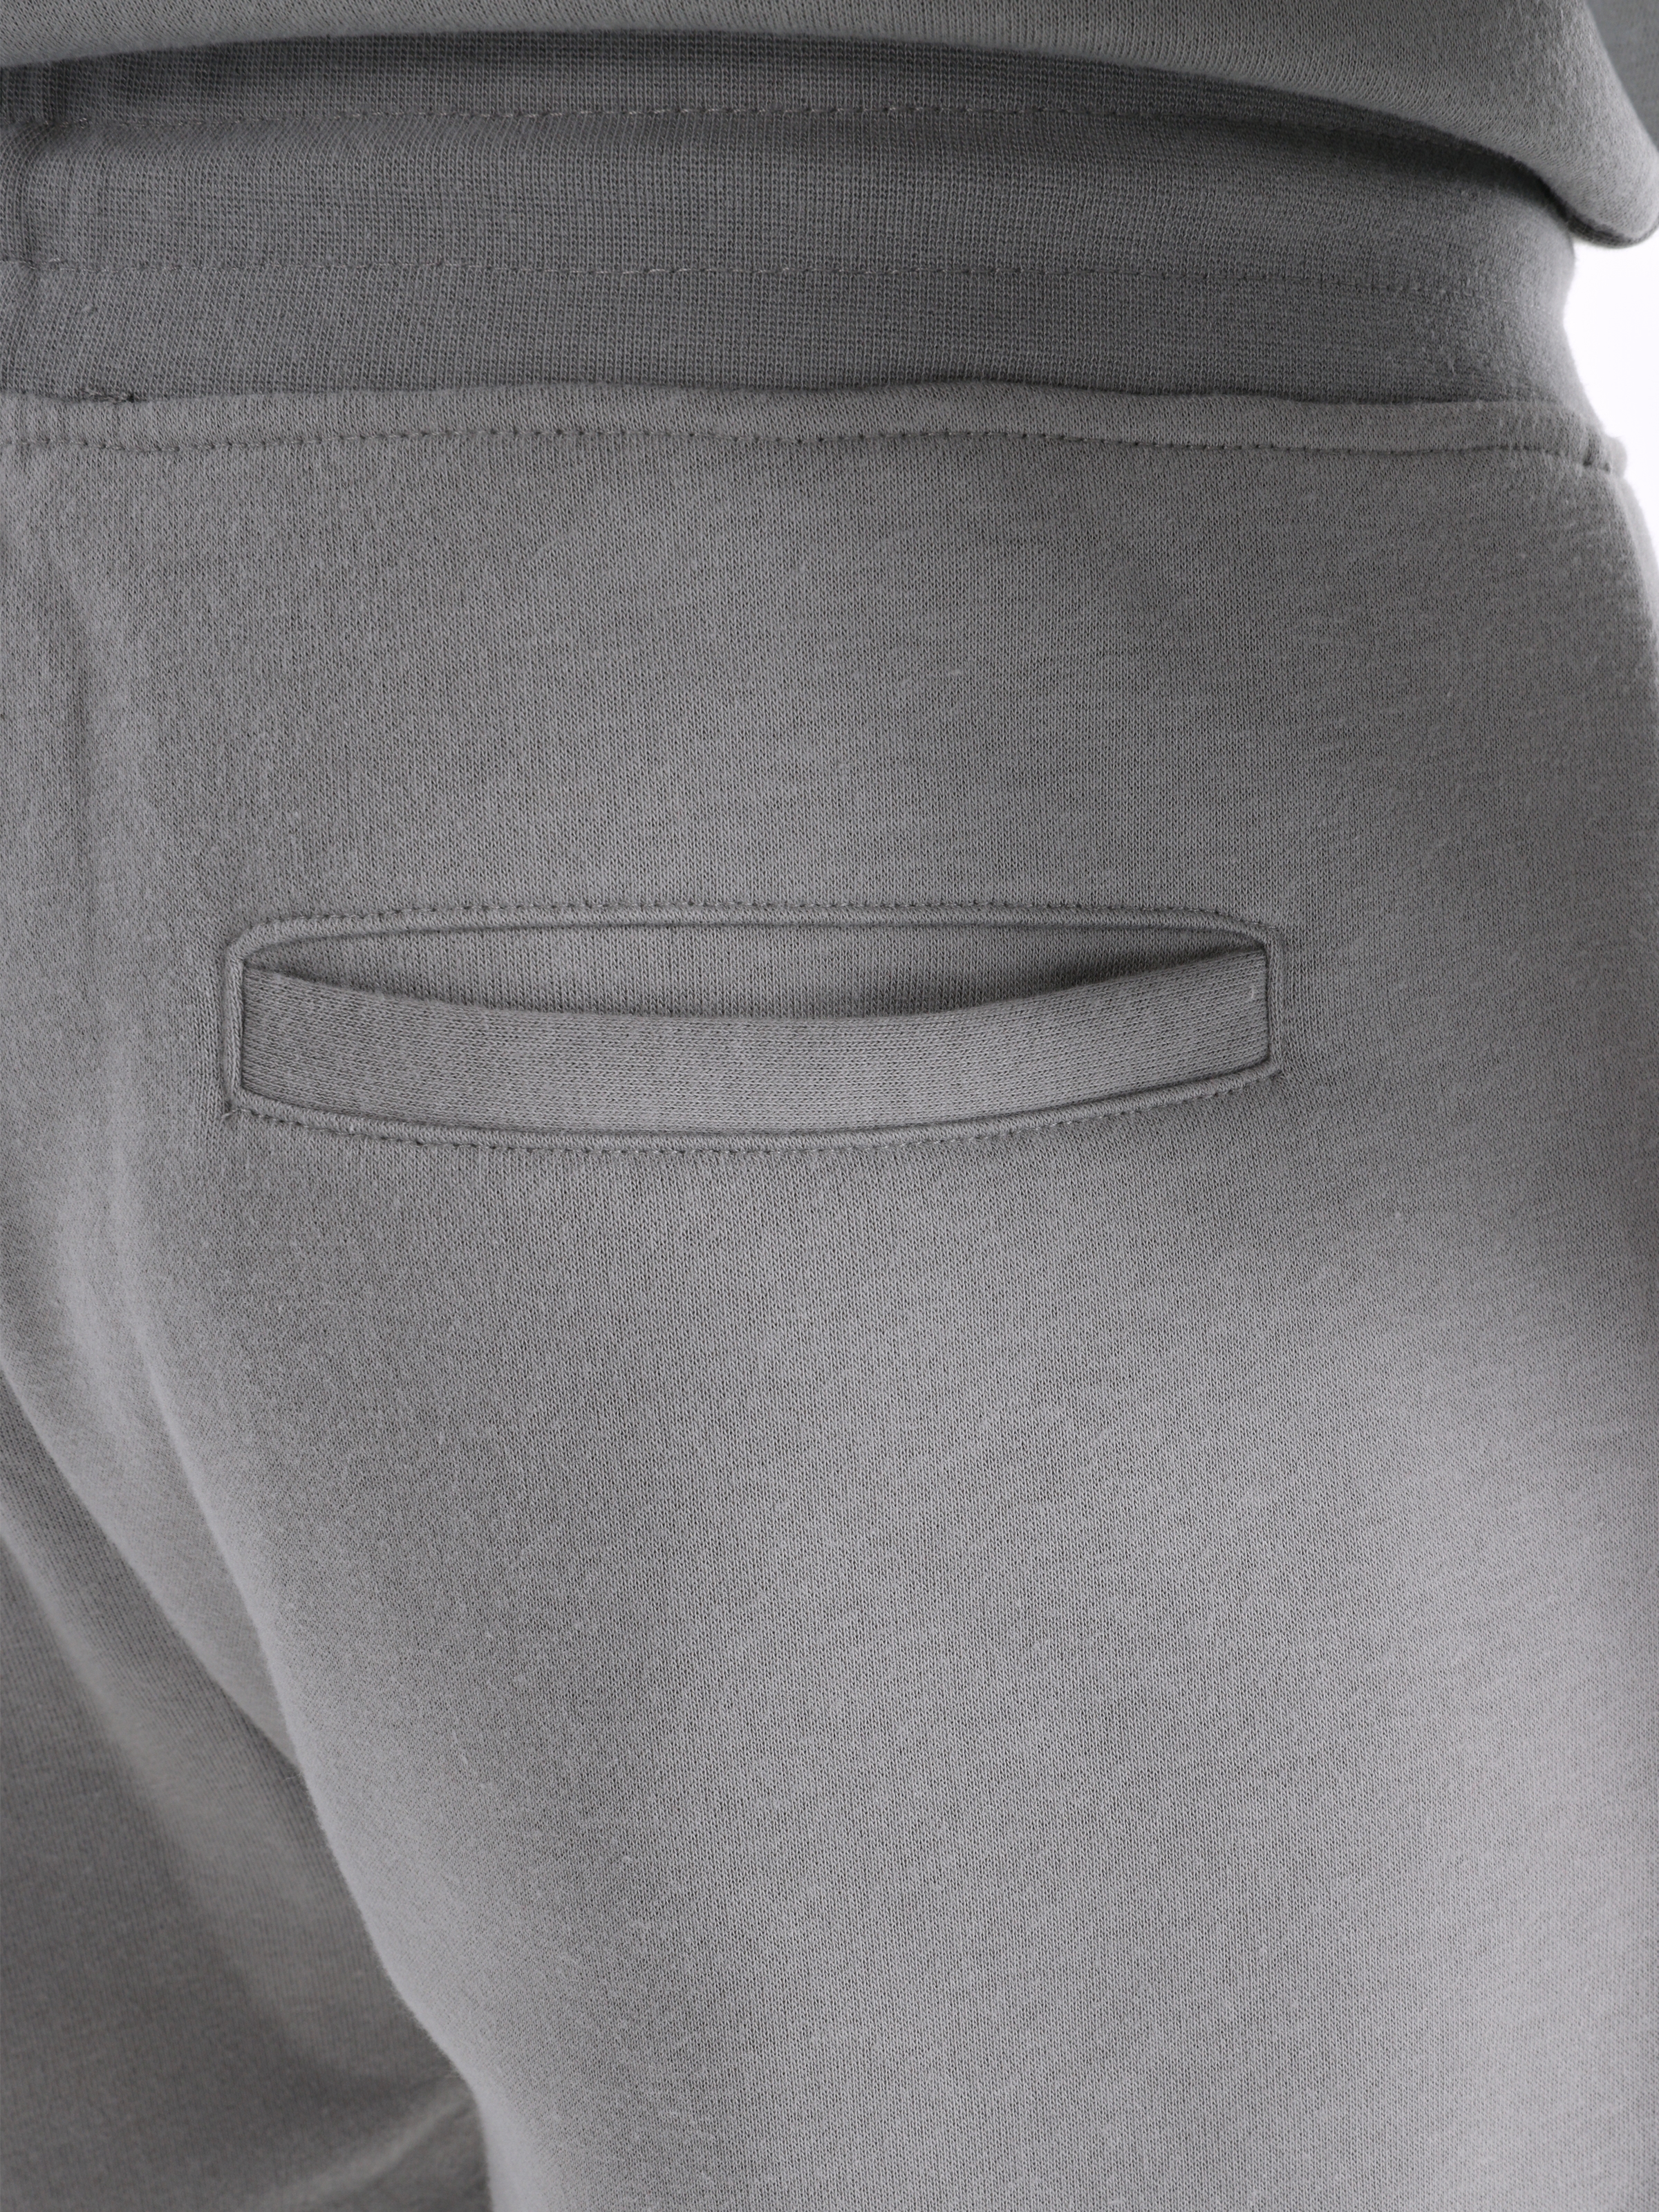 Afficher les détails de Pantalon De Survêtement Gris Taille Moyenne Coupe Slim Pour Homme